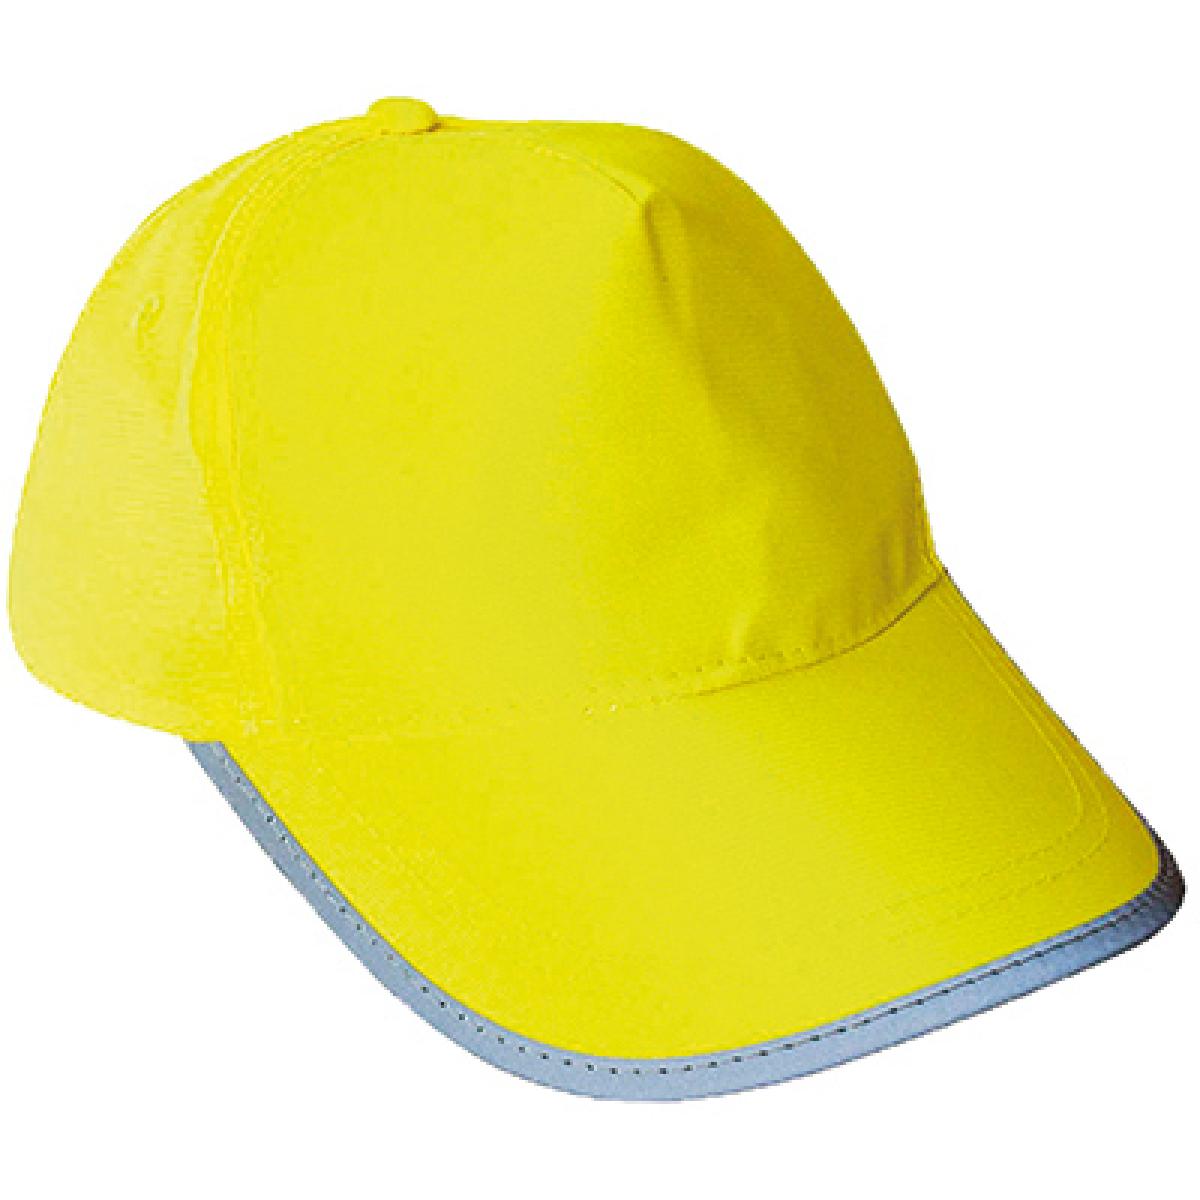 Hersteller: Korntex Herstellernummer: KXCAP Artikelbezeichnung: Hi-Viz-, Fluo-Cap / Mütze Farbe: Signal Yellow